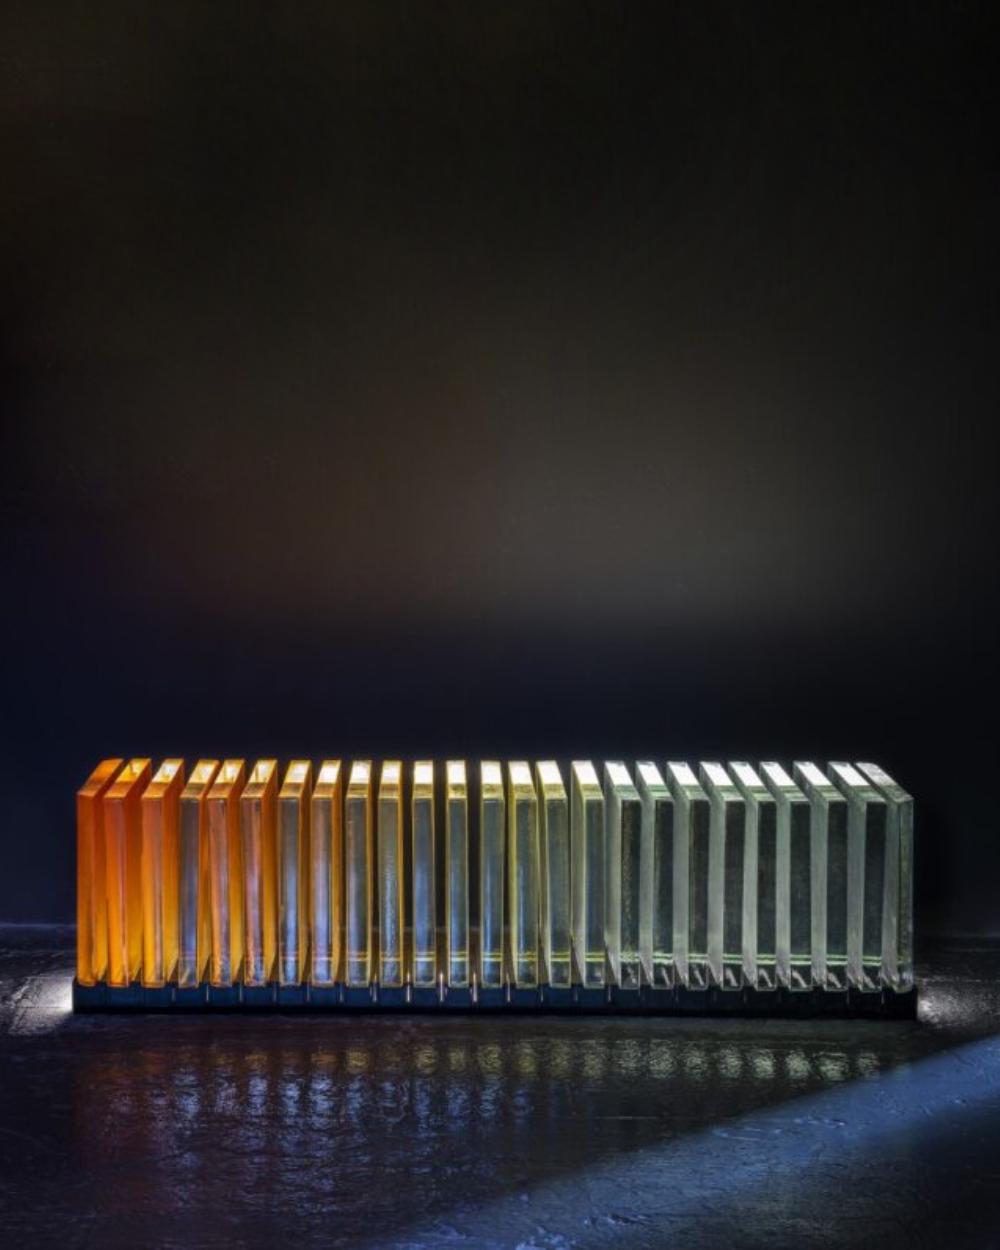 Das für Prism charakteristische Ombre aus lebhaft gefärbten Gussglasplatten geht allmählich in absolute Transparenz über. Inspiriert von der Brechungsqualität des lebendigen Prismas, prallt das Licht zwischen den Paneelen ab und durchdringt sie, so